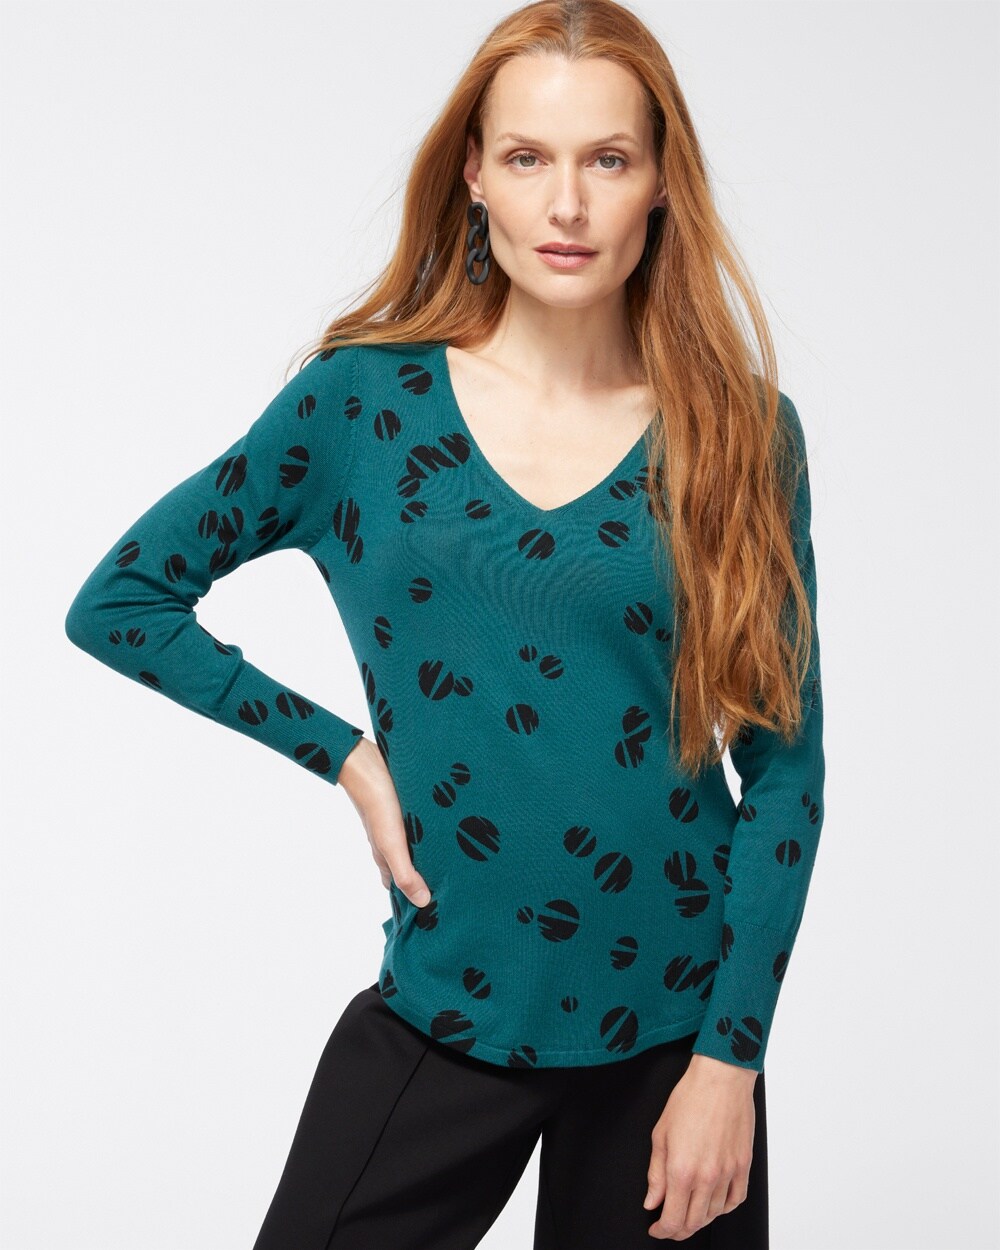 Spun Rayon Dots V-Neck Sweater